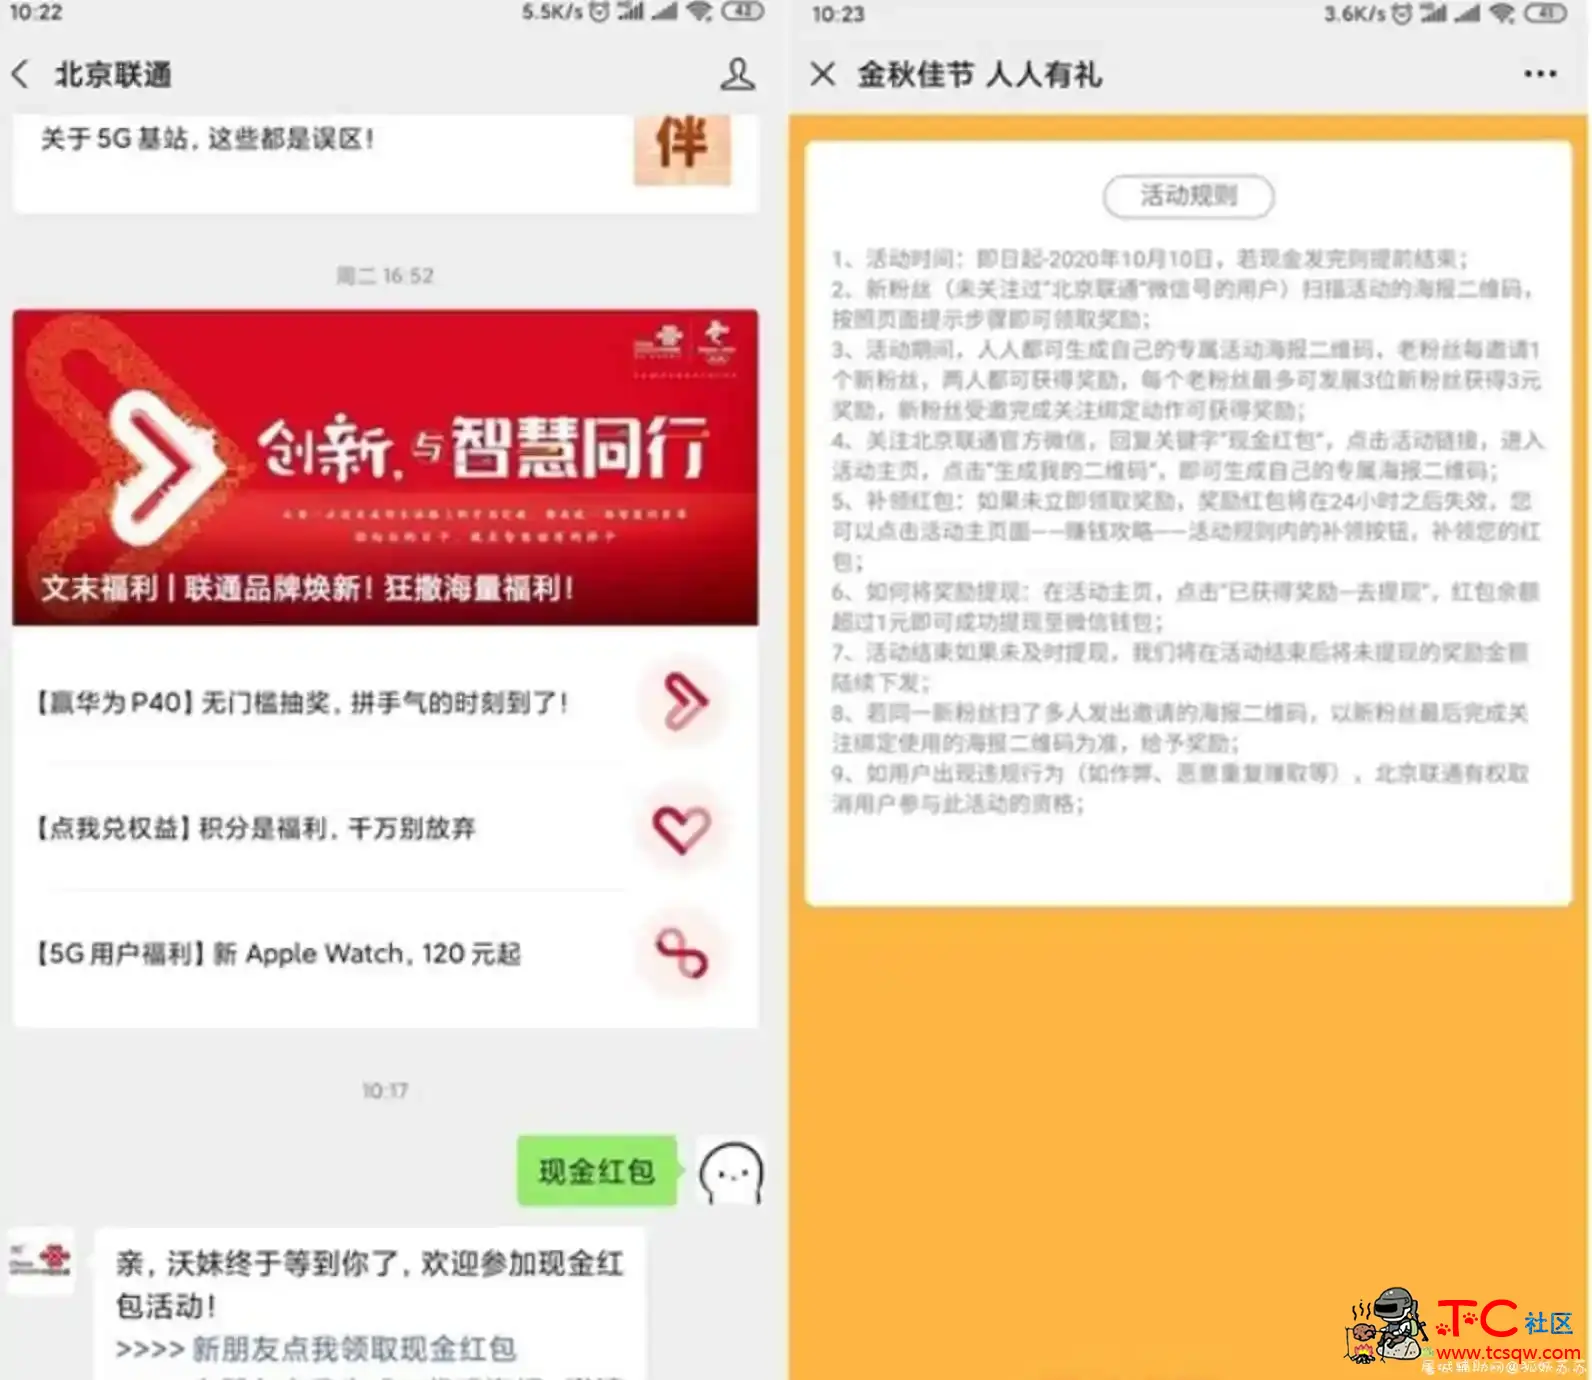 北京联通公众号送红包 关注即可得1元红包 屠城辅助网www.tcfz1.com3553